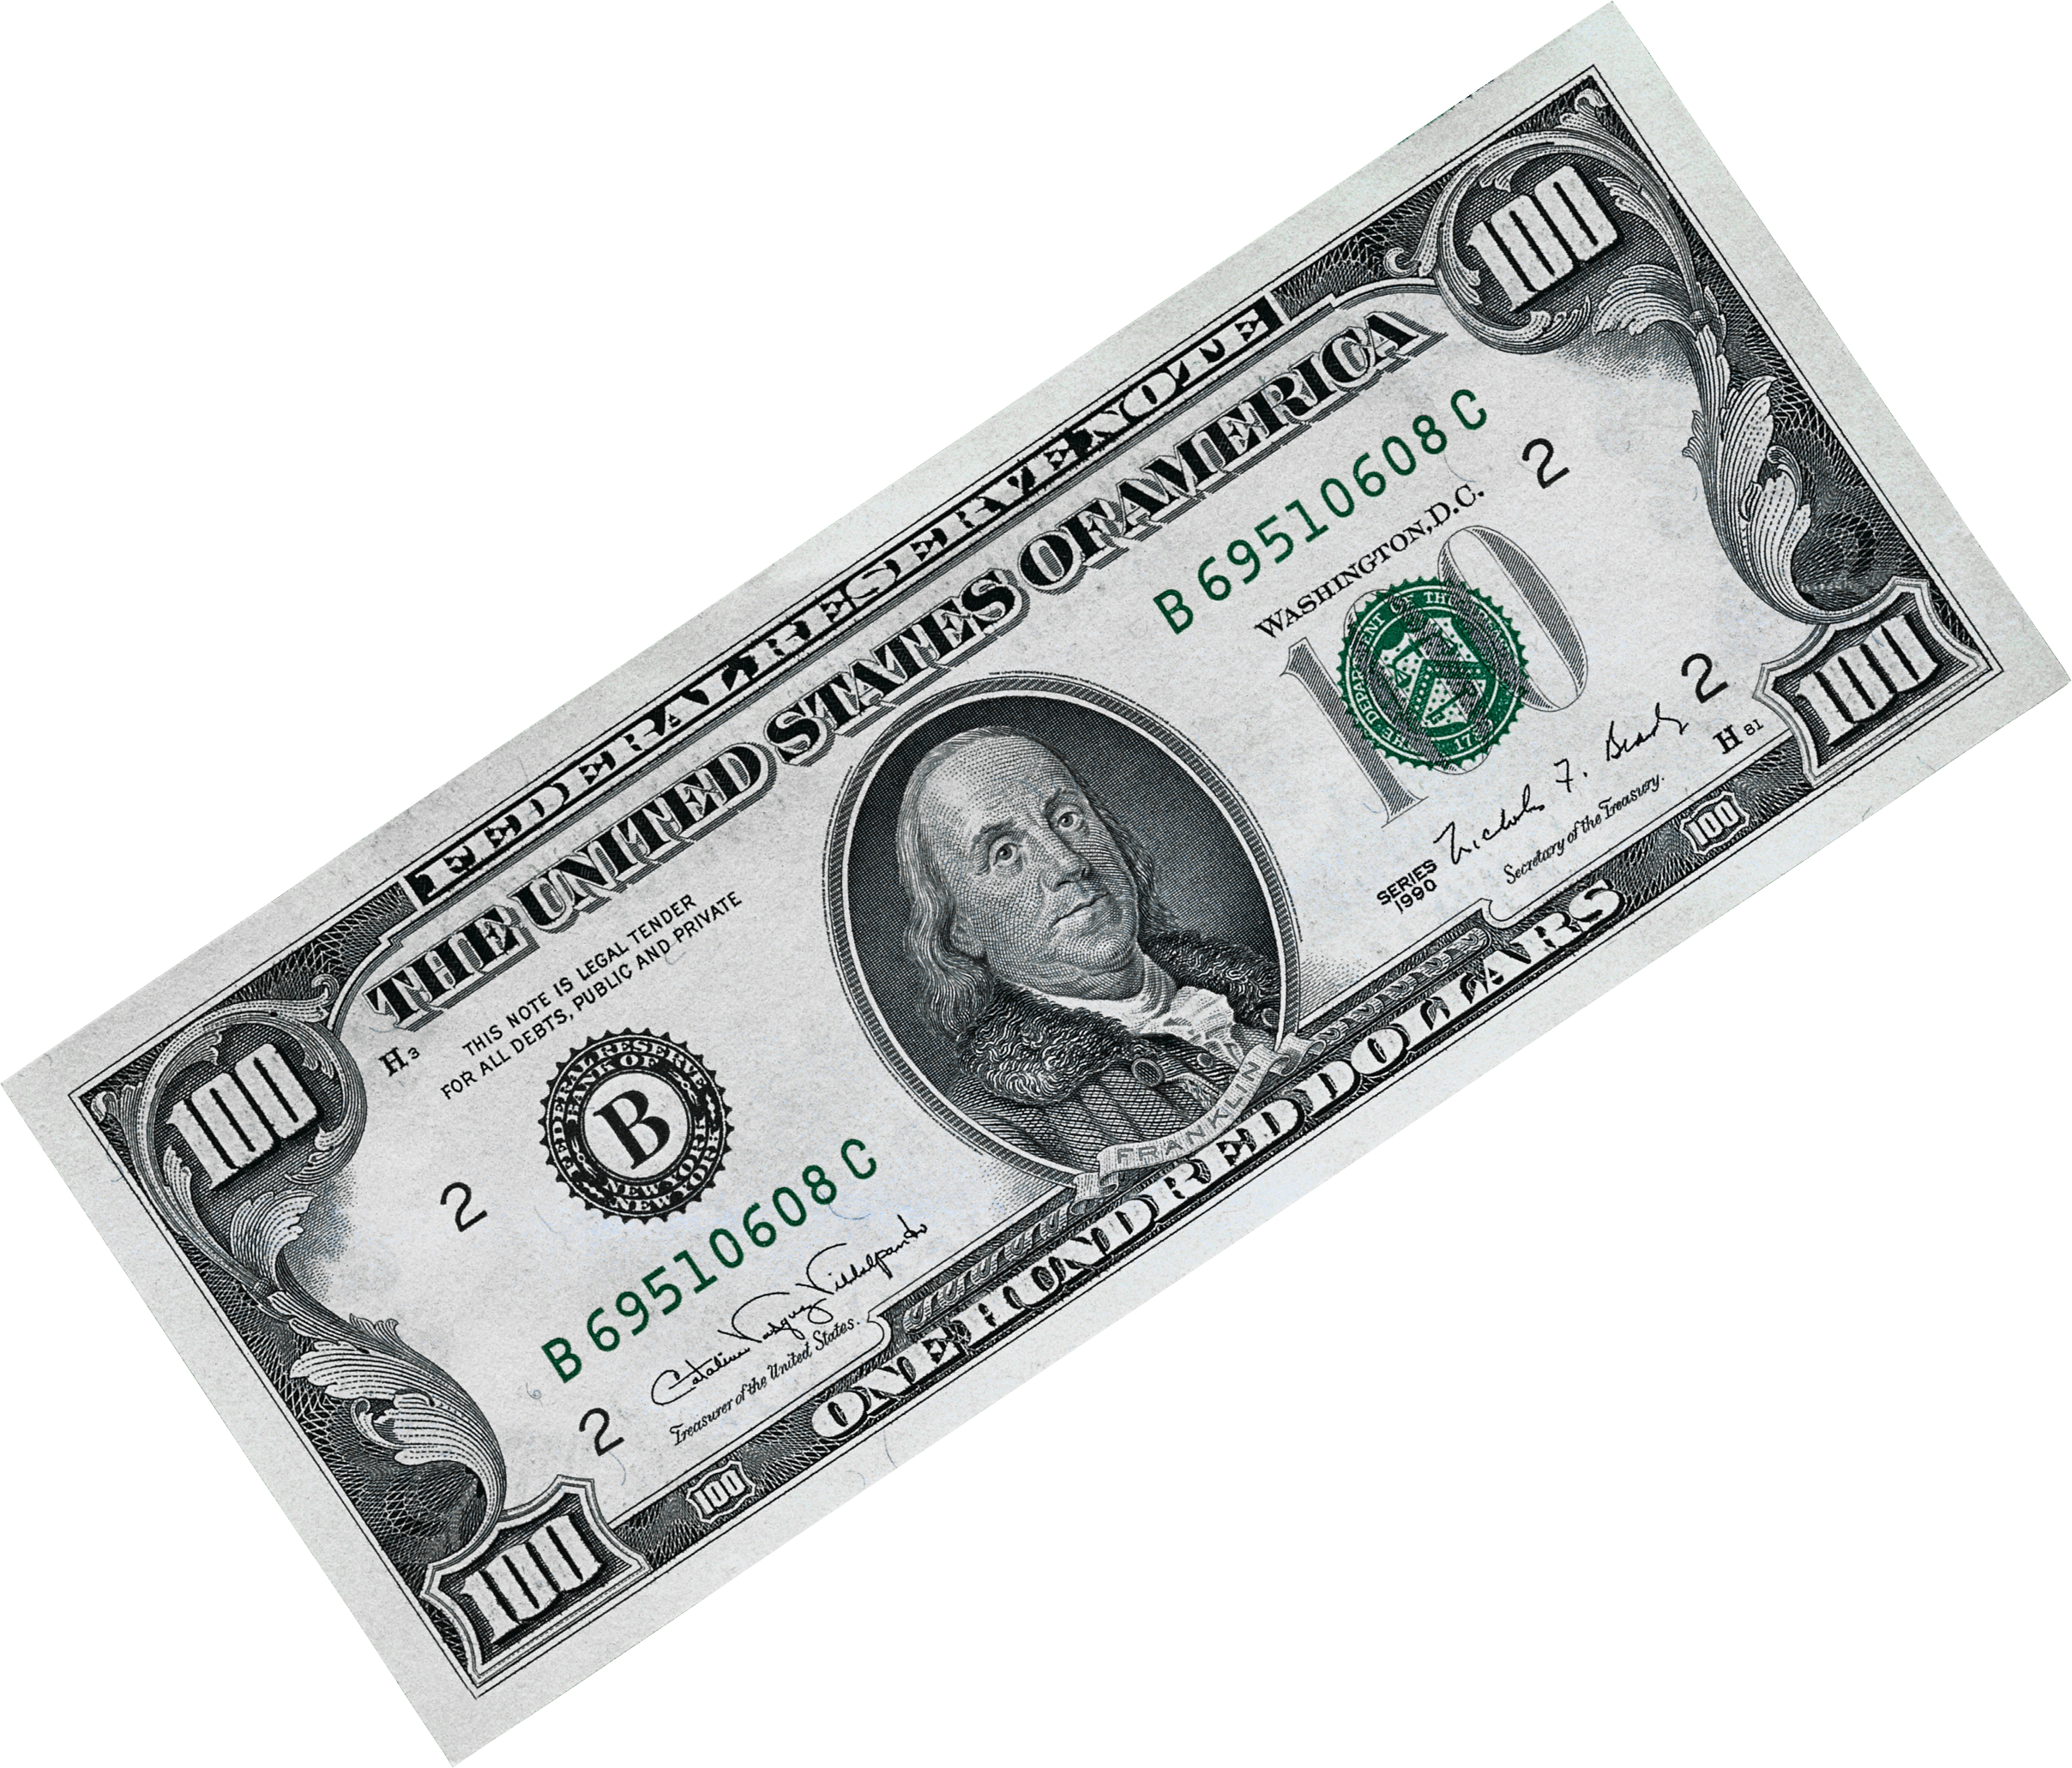 Immagine Trasparente della banconota da cento dollari americana